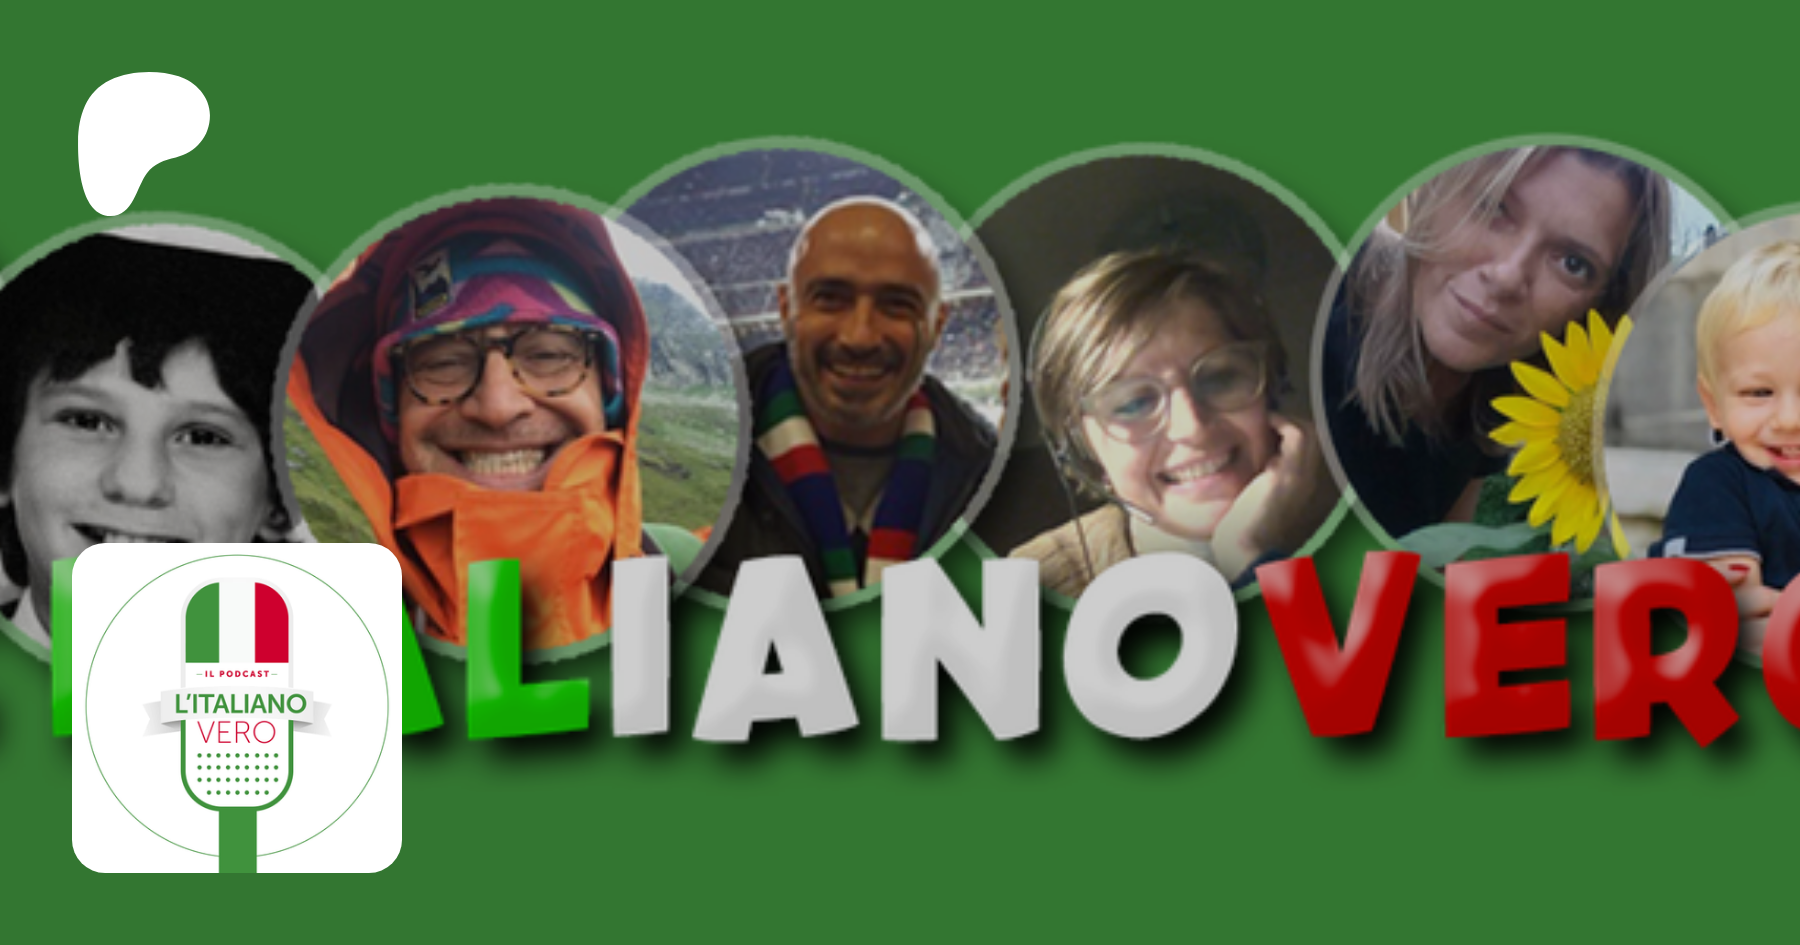 L'italiano vero - Podcast, creating Podcast